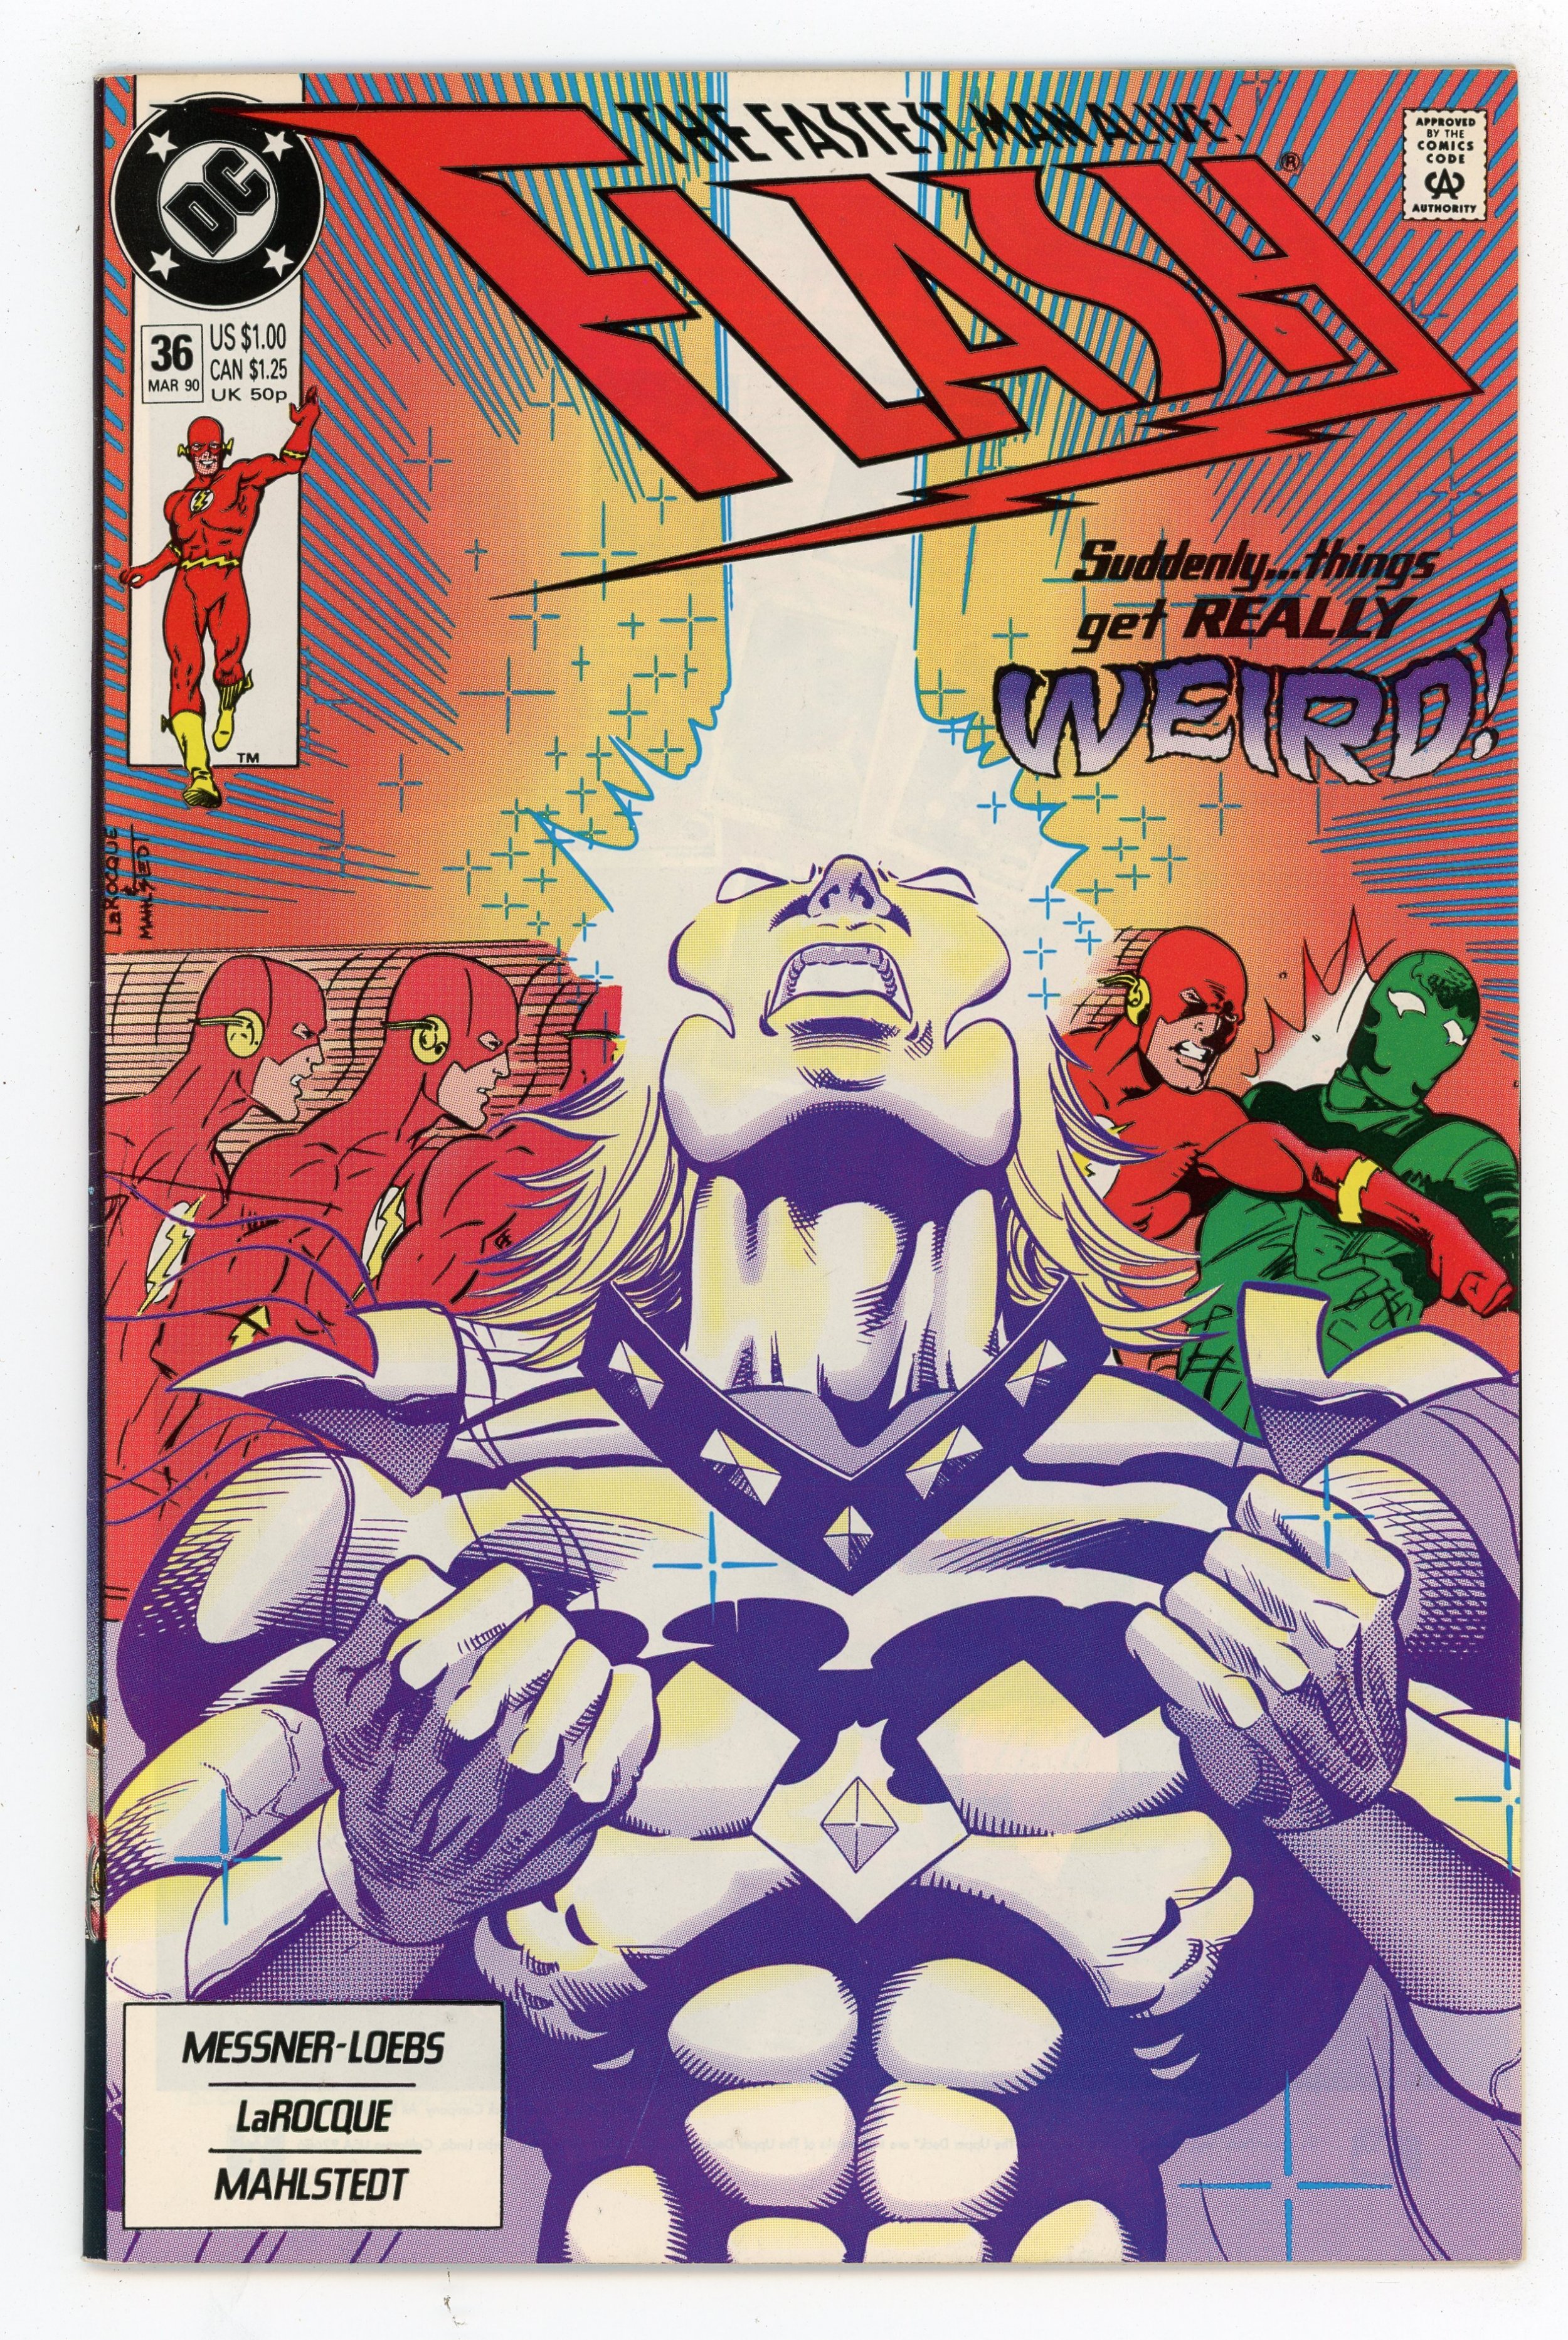 The Rogues has a new member (Flash #36) : r/DCcomics